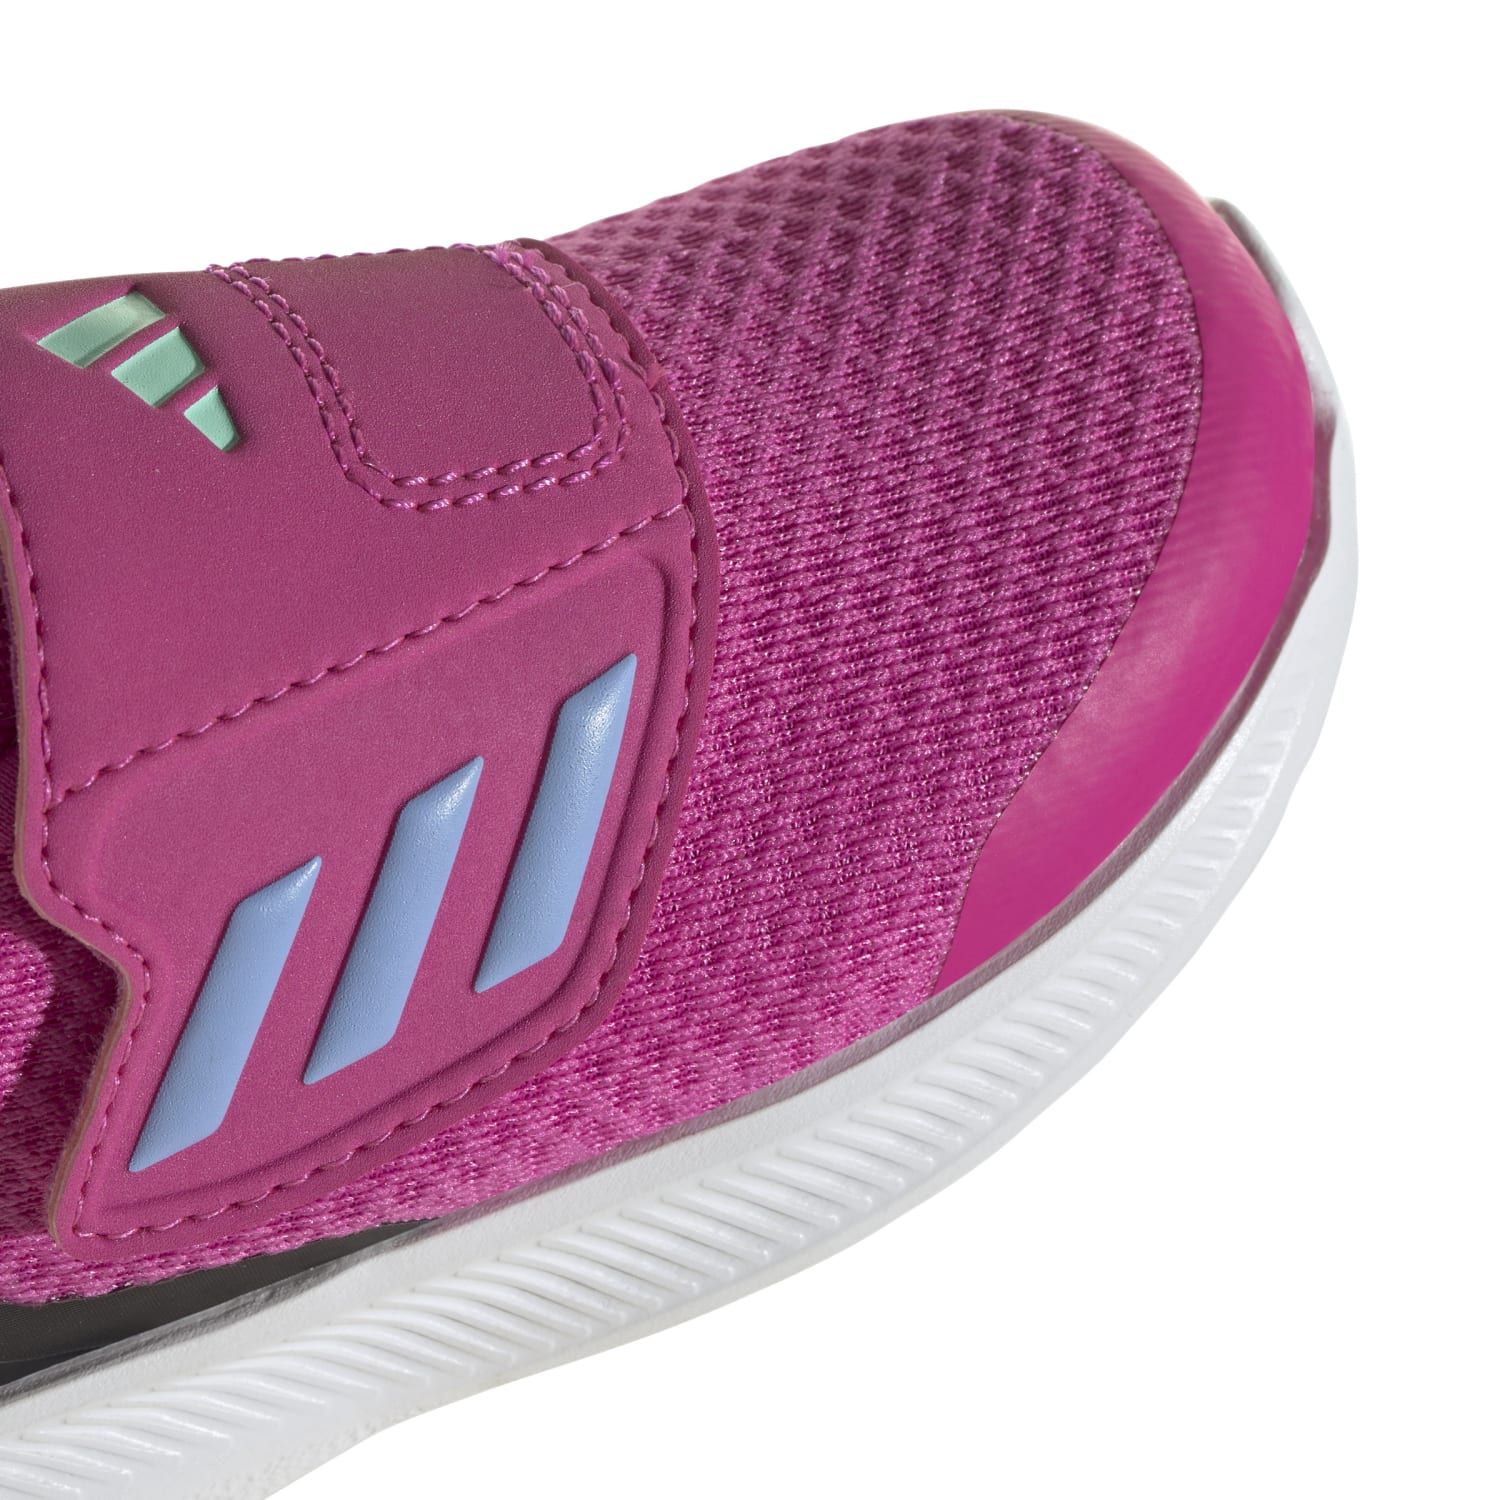 Adidas RUNFALCON 3.0 AC I, otroški tekaški copati, roza | Intersport